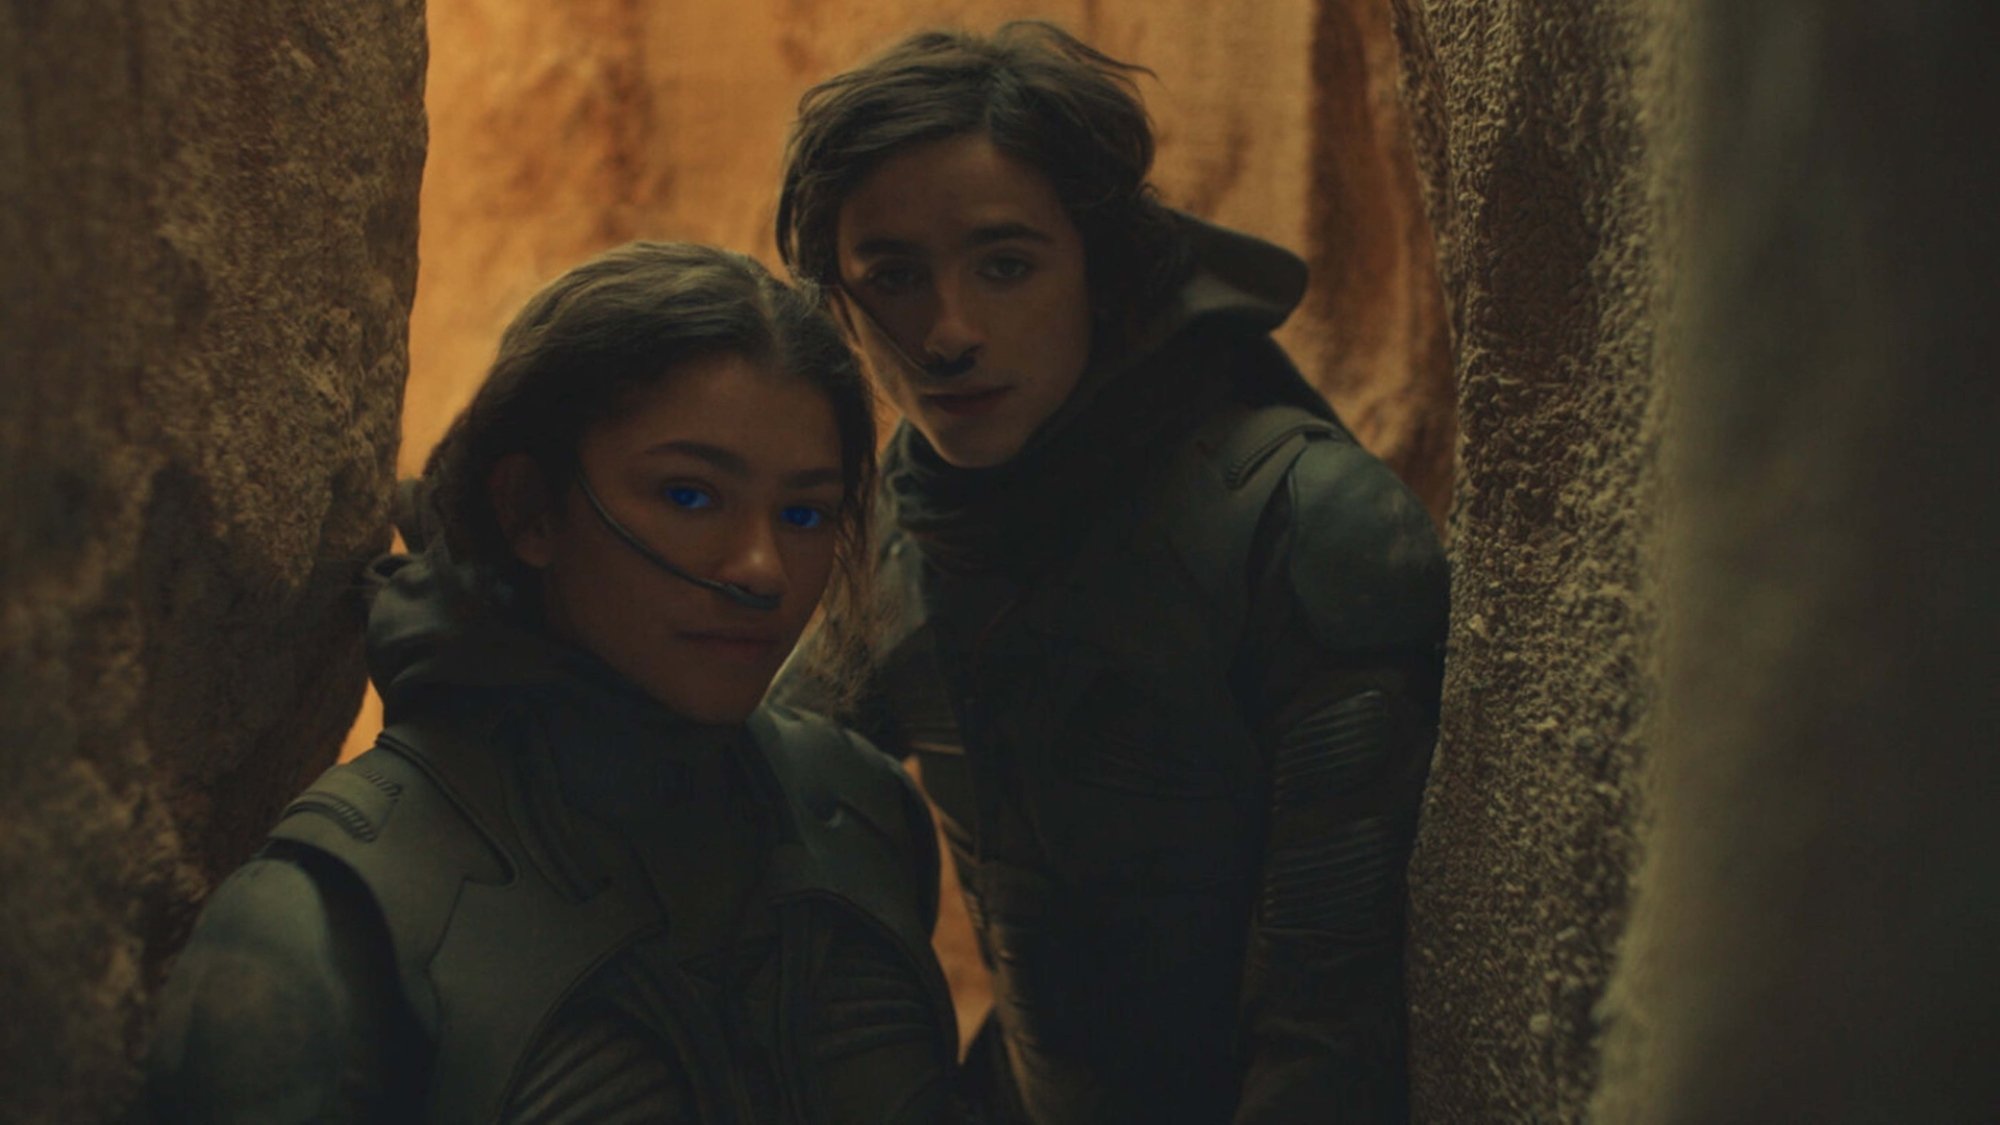 Zendaya and Timothee Chalamet in "Dune."